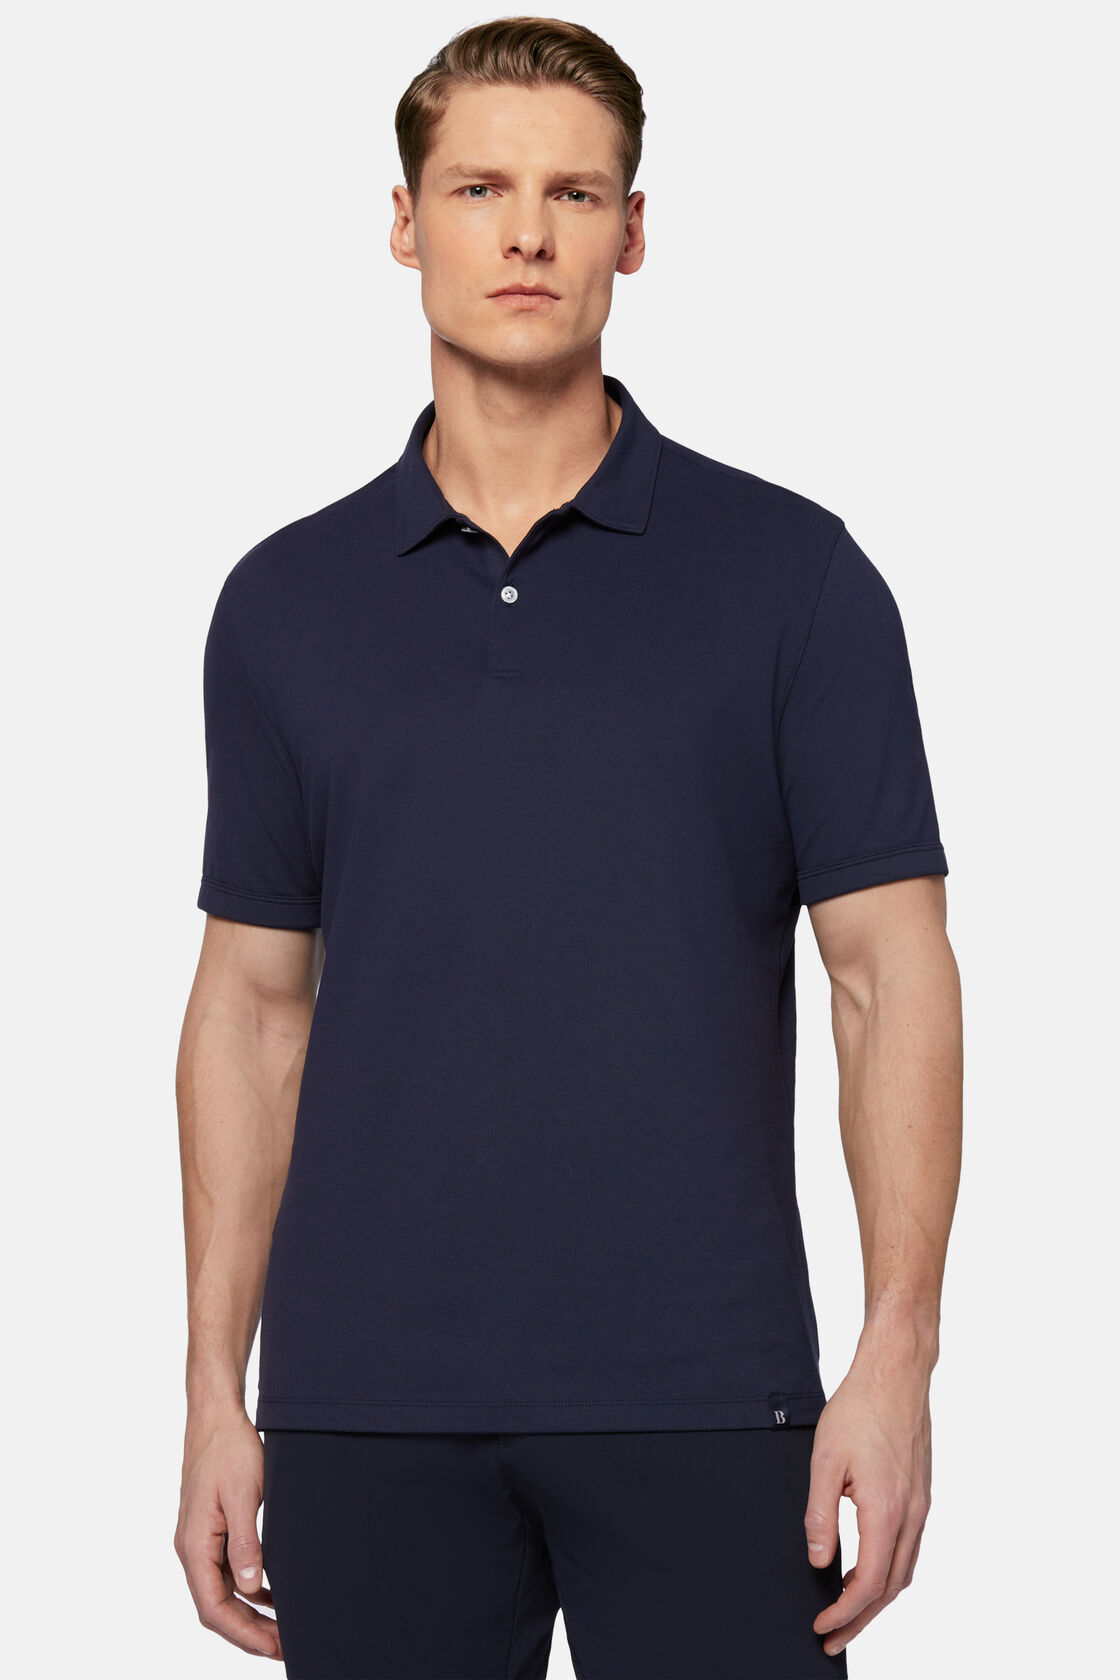 Πικέ ανοιξιάτικο μπλουζάκι πόλο υψηλών επιδόσεων, Navy blue, hi-res